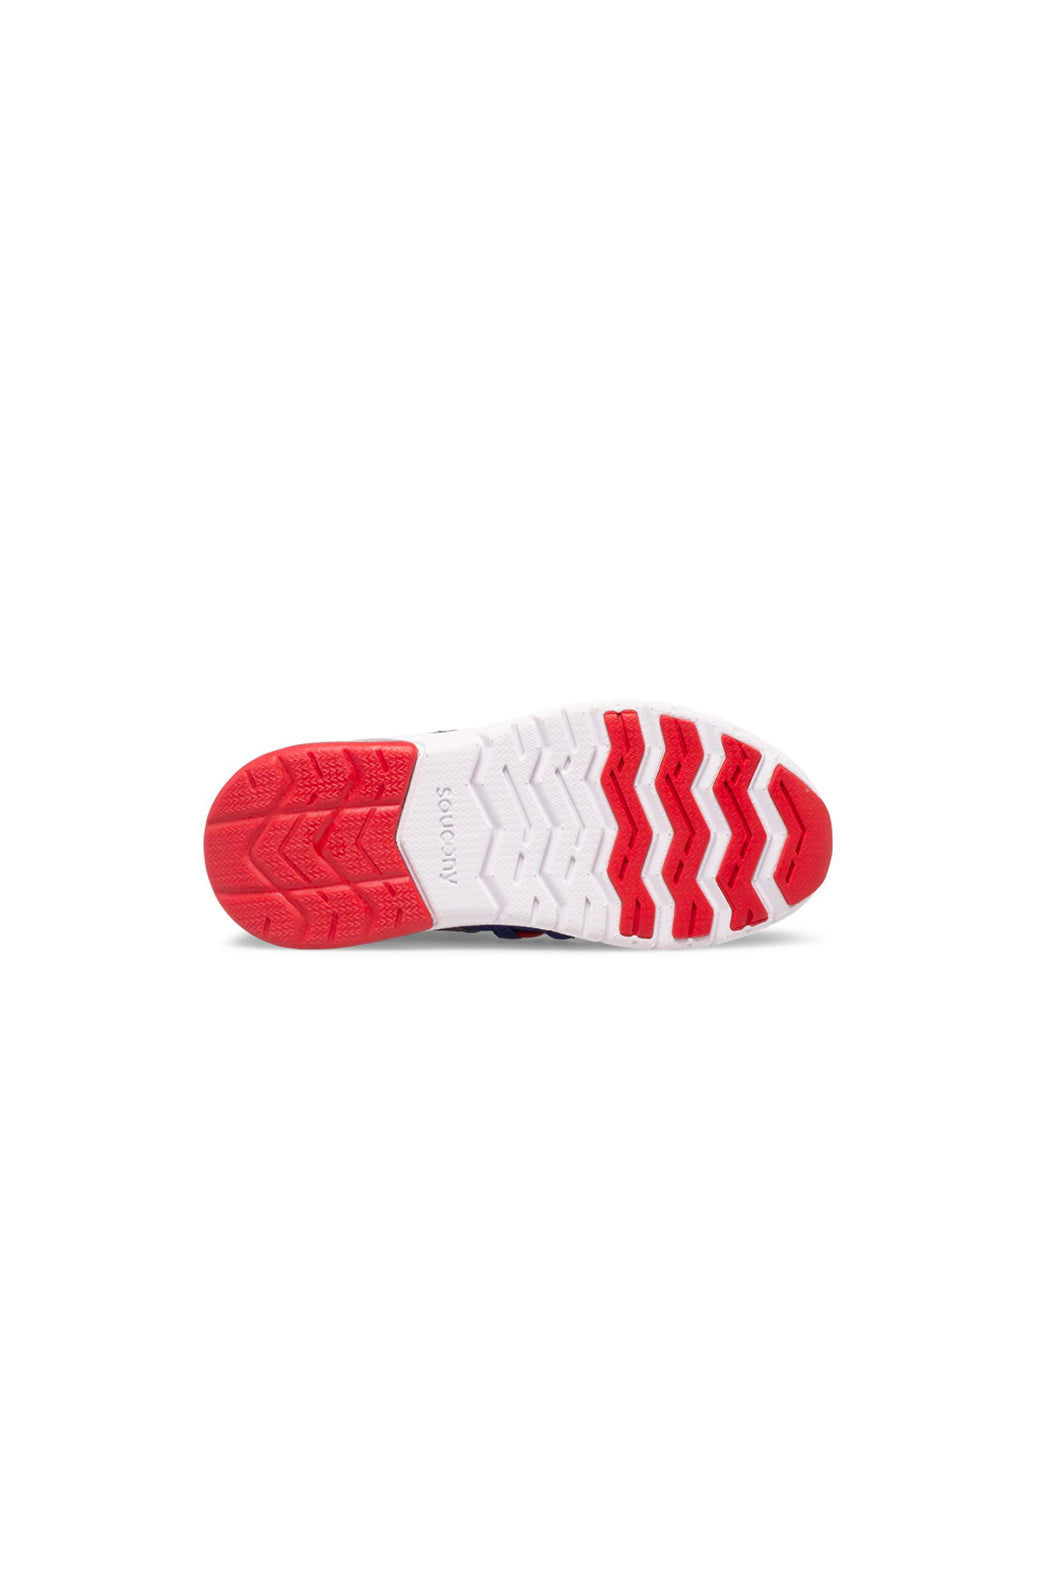 Saucony Flash Glow 2.0 Sneaker - Navy/Red/Grey